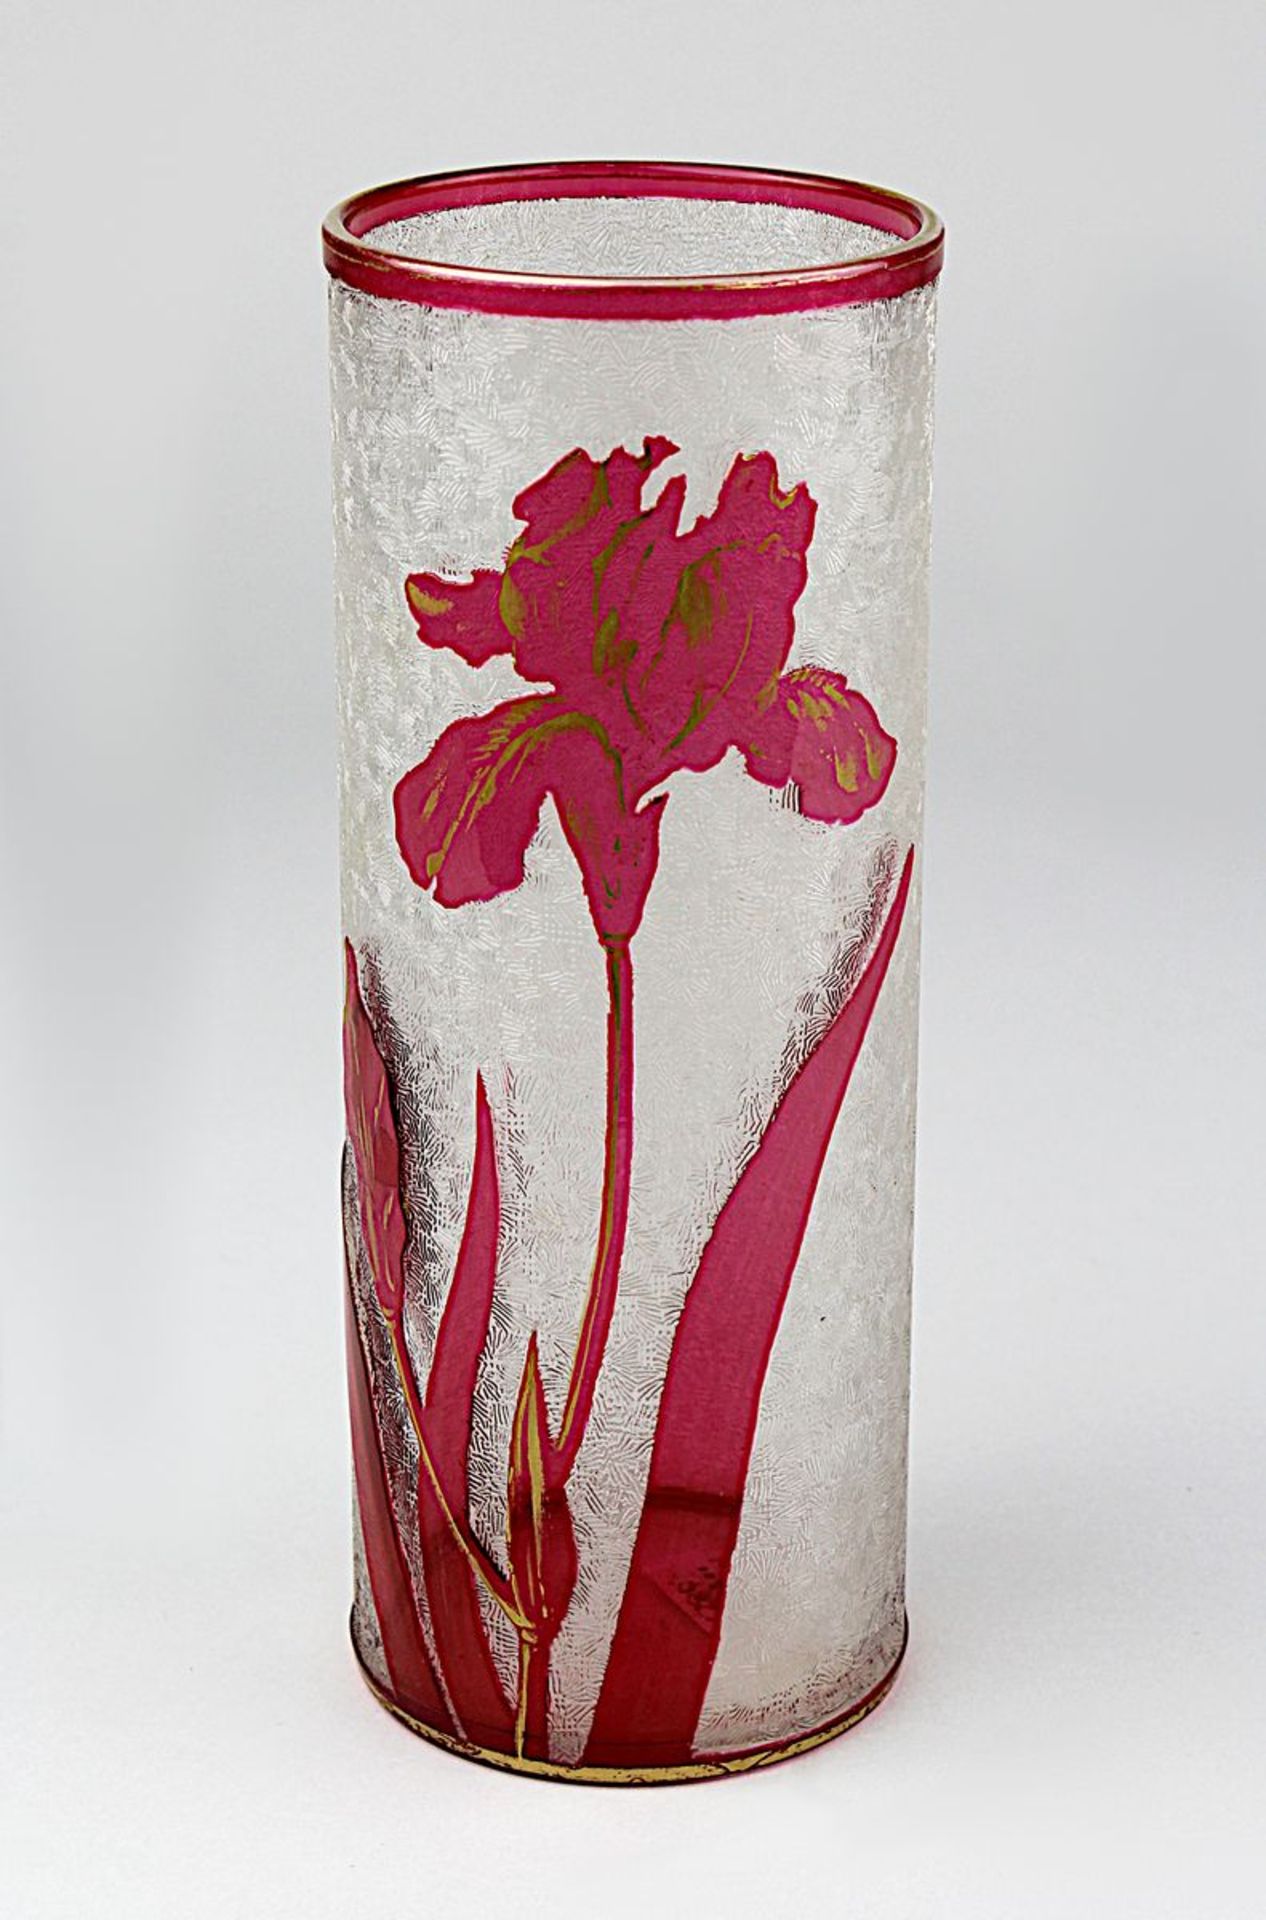 Baccarat Jugendstil-Vase, um 1900, Cristalleries de Baccarat, Meurthe et Moselle, zylinderförmiger